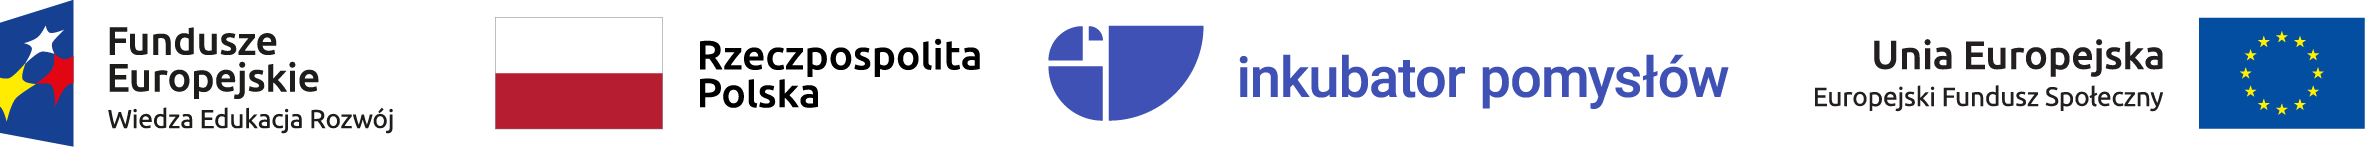 Logo Funduszy Europejskich, Europejskiego Funduszu Społecznego i Inkubatora pomysłów oraz flaga Rzeczpospolitej Polskiej